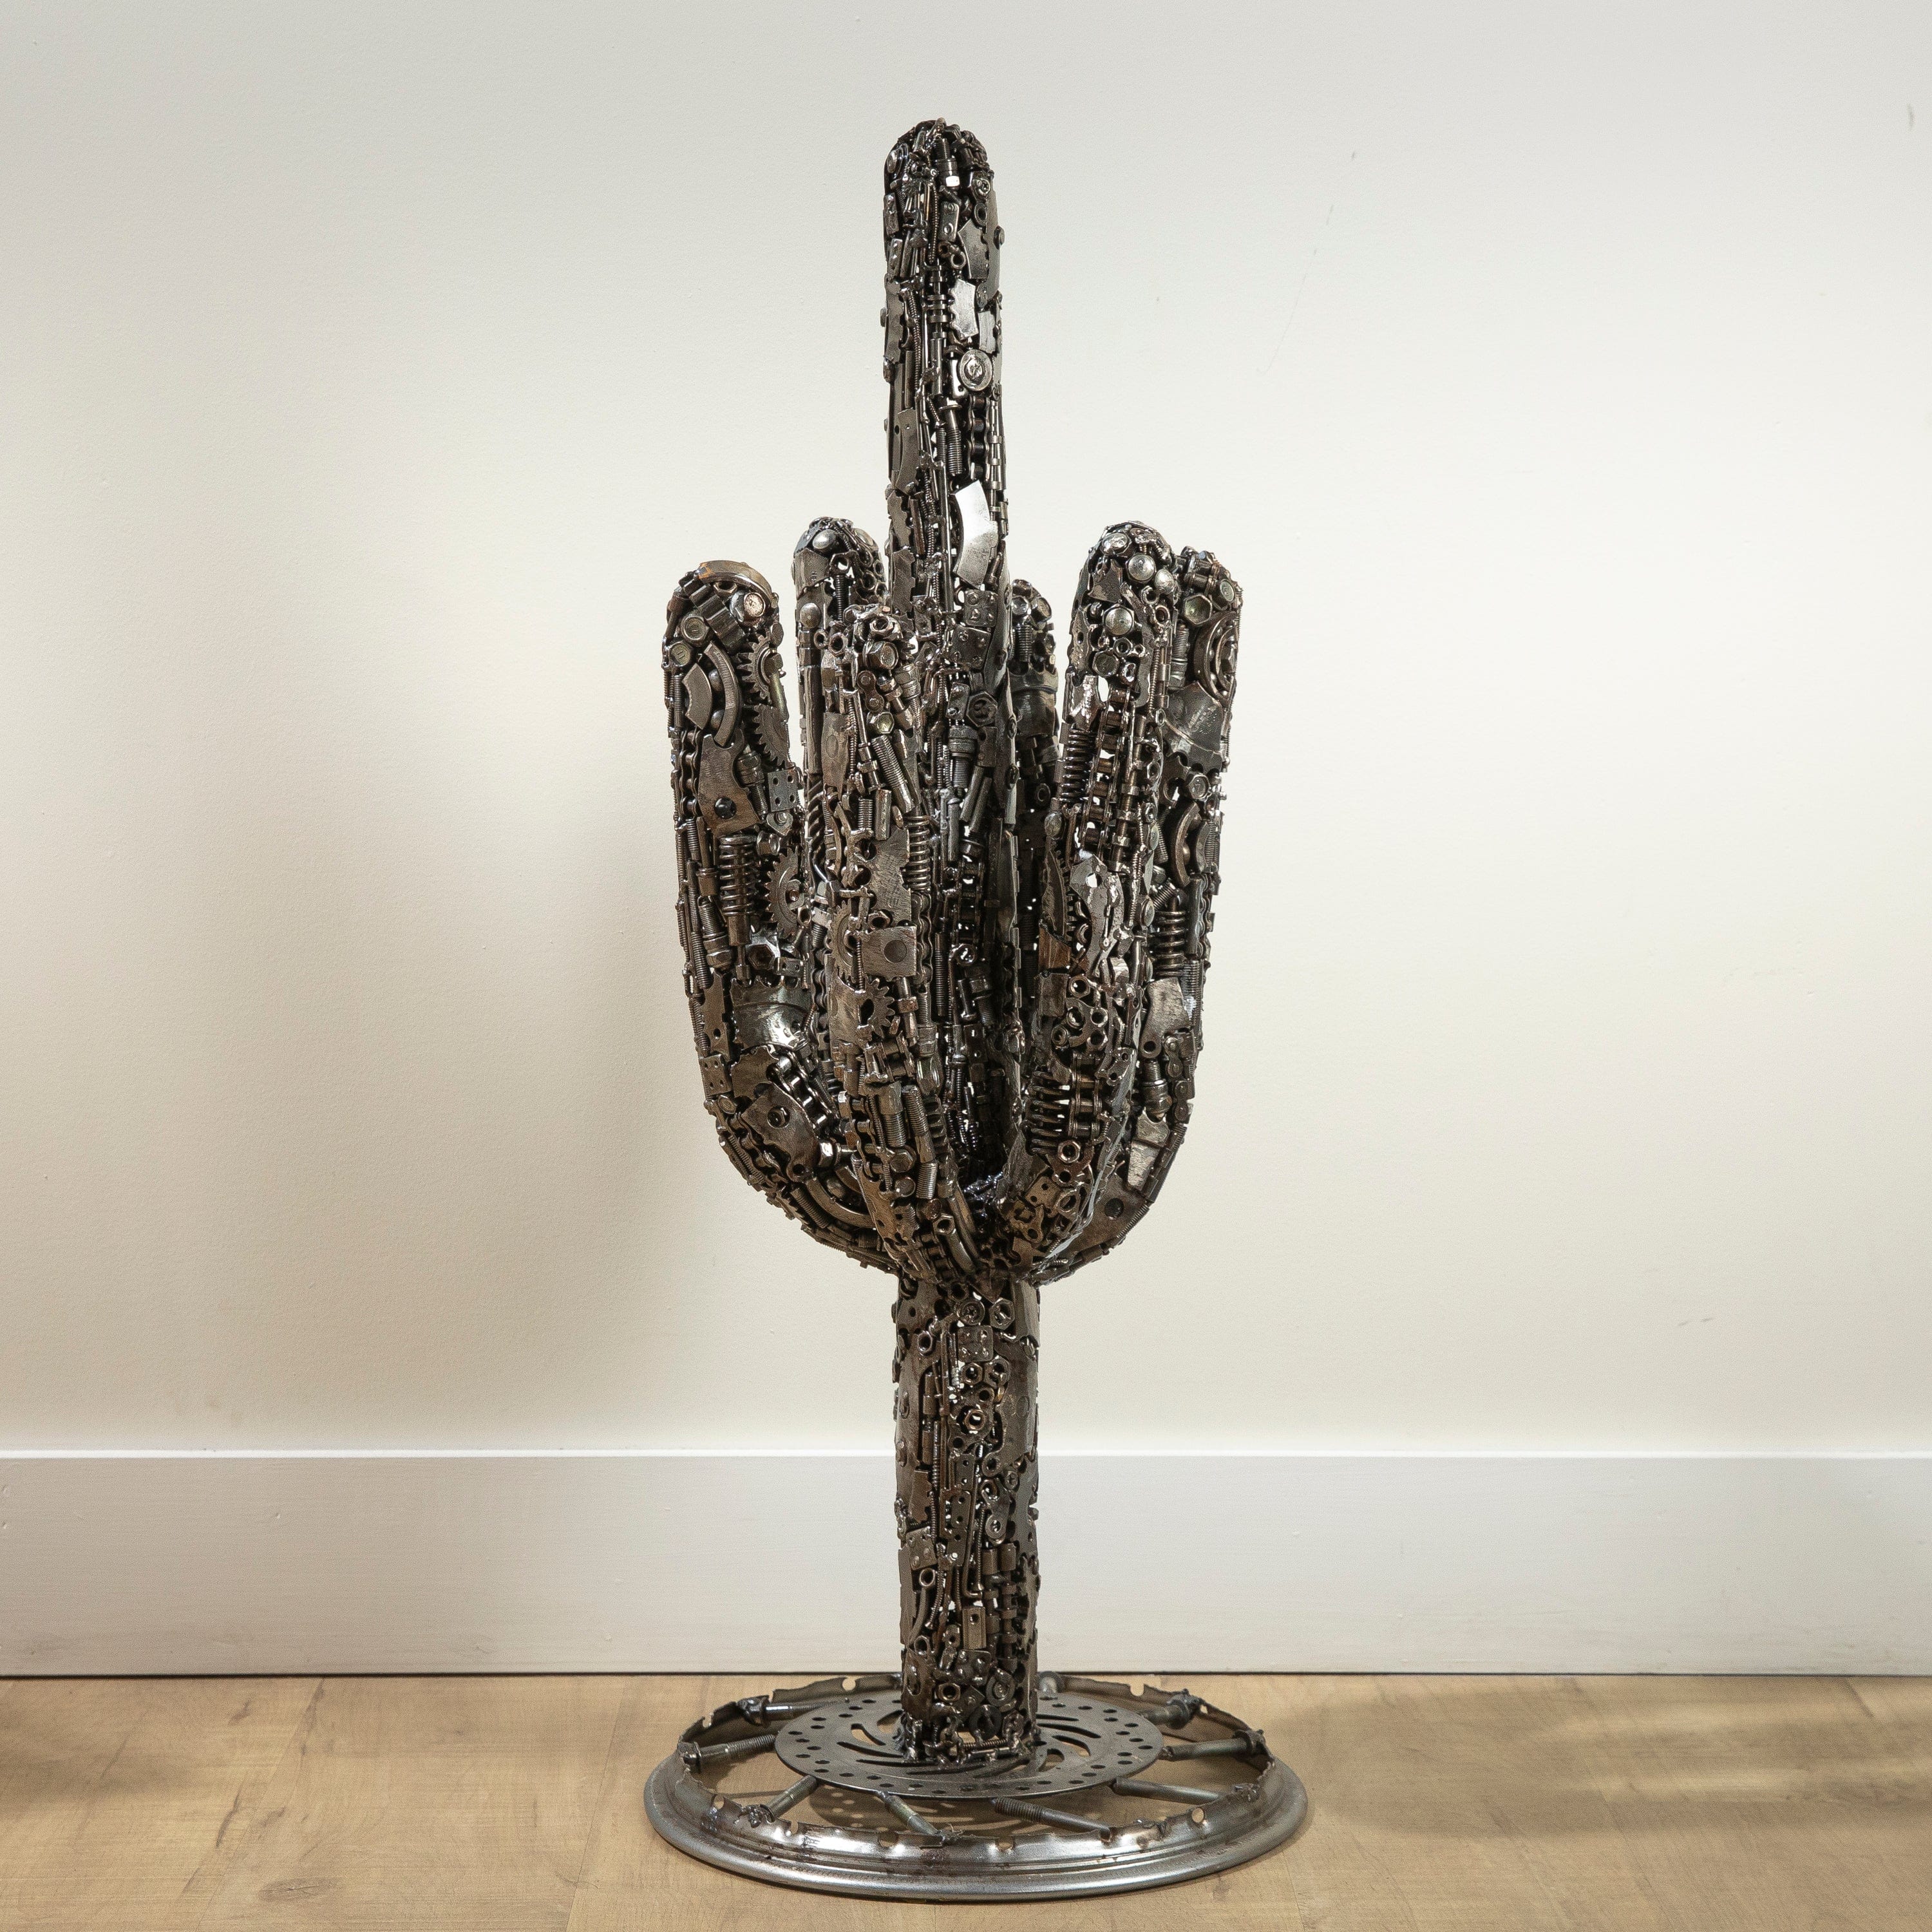 KALIFANO Recycled Metal Art 37" Saguaro Cactus Recycled Metal Art Sculpture RMS-SC35x94-PK